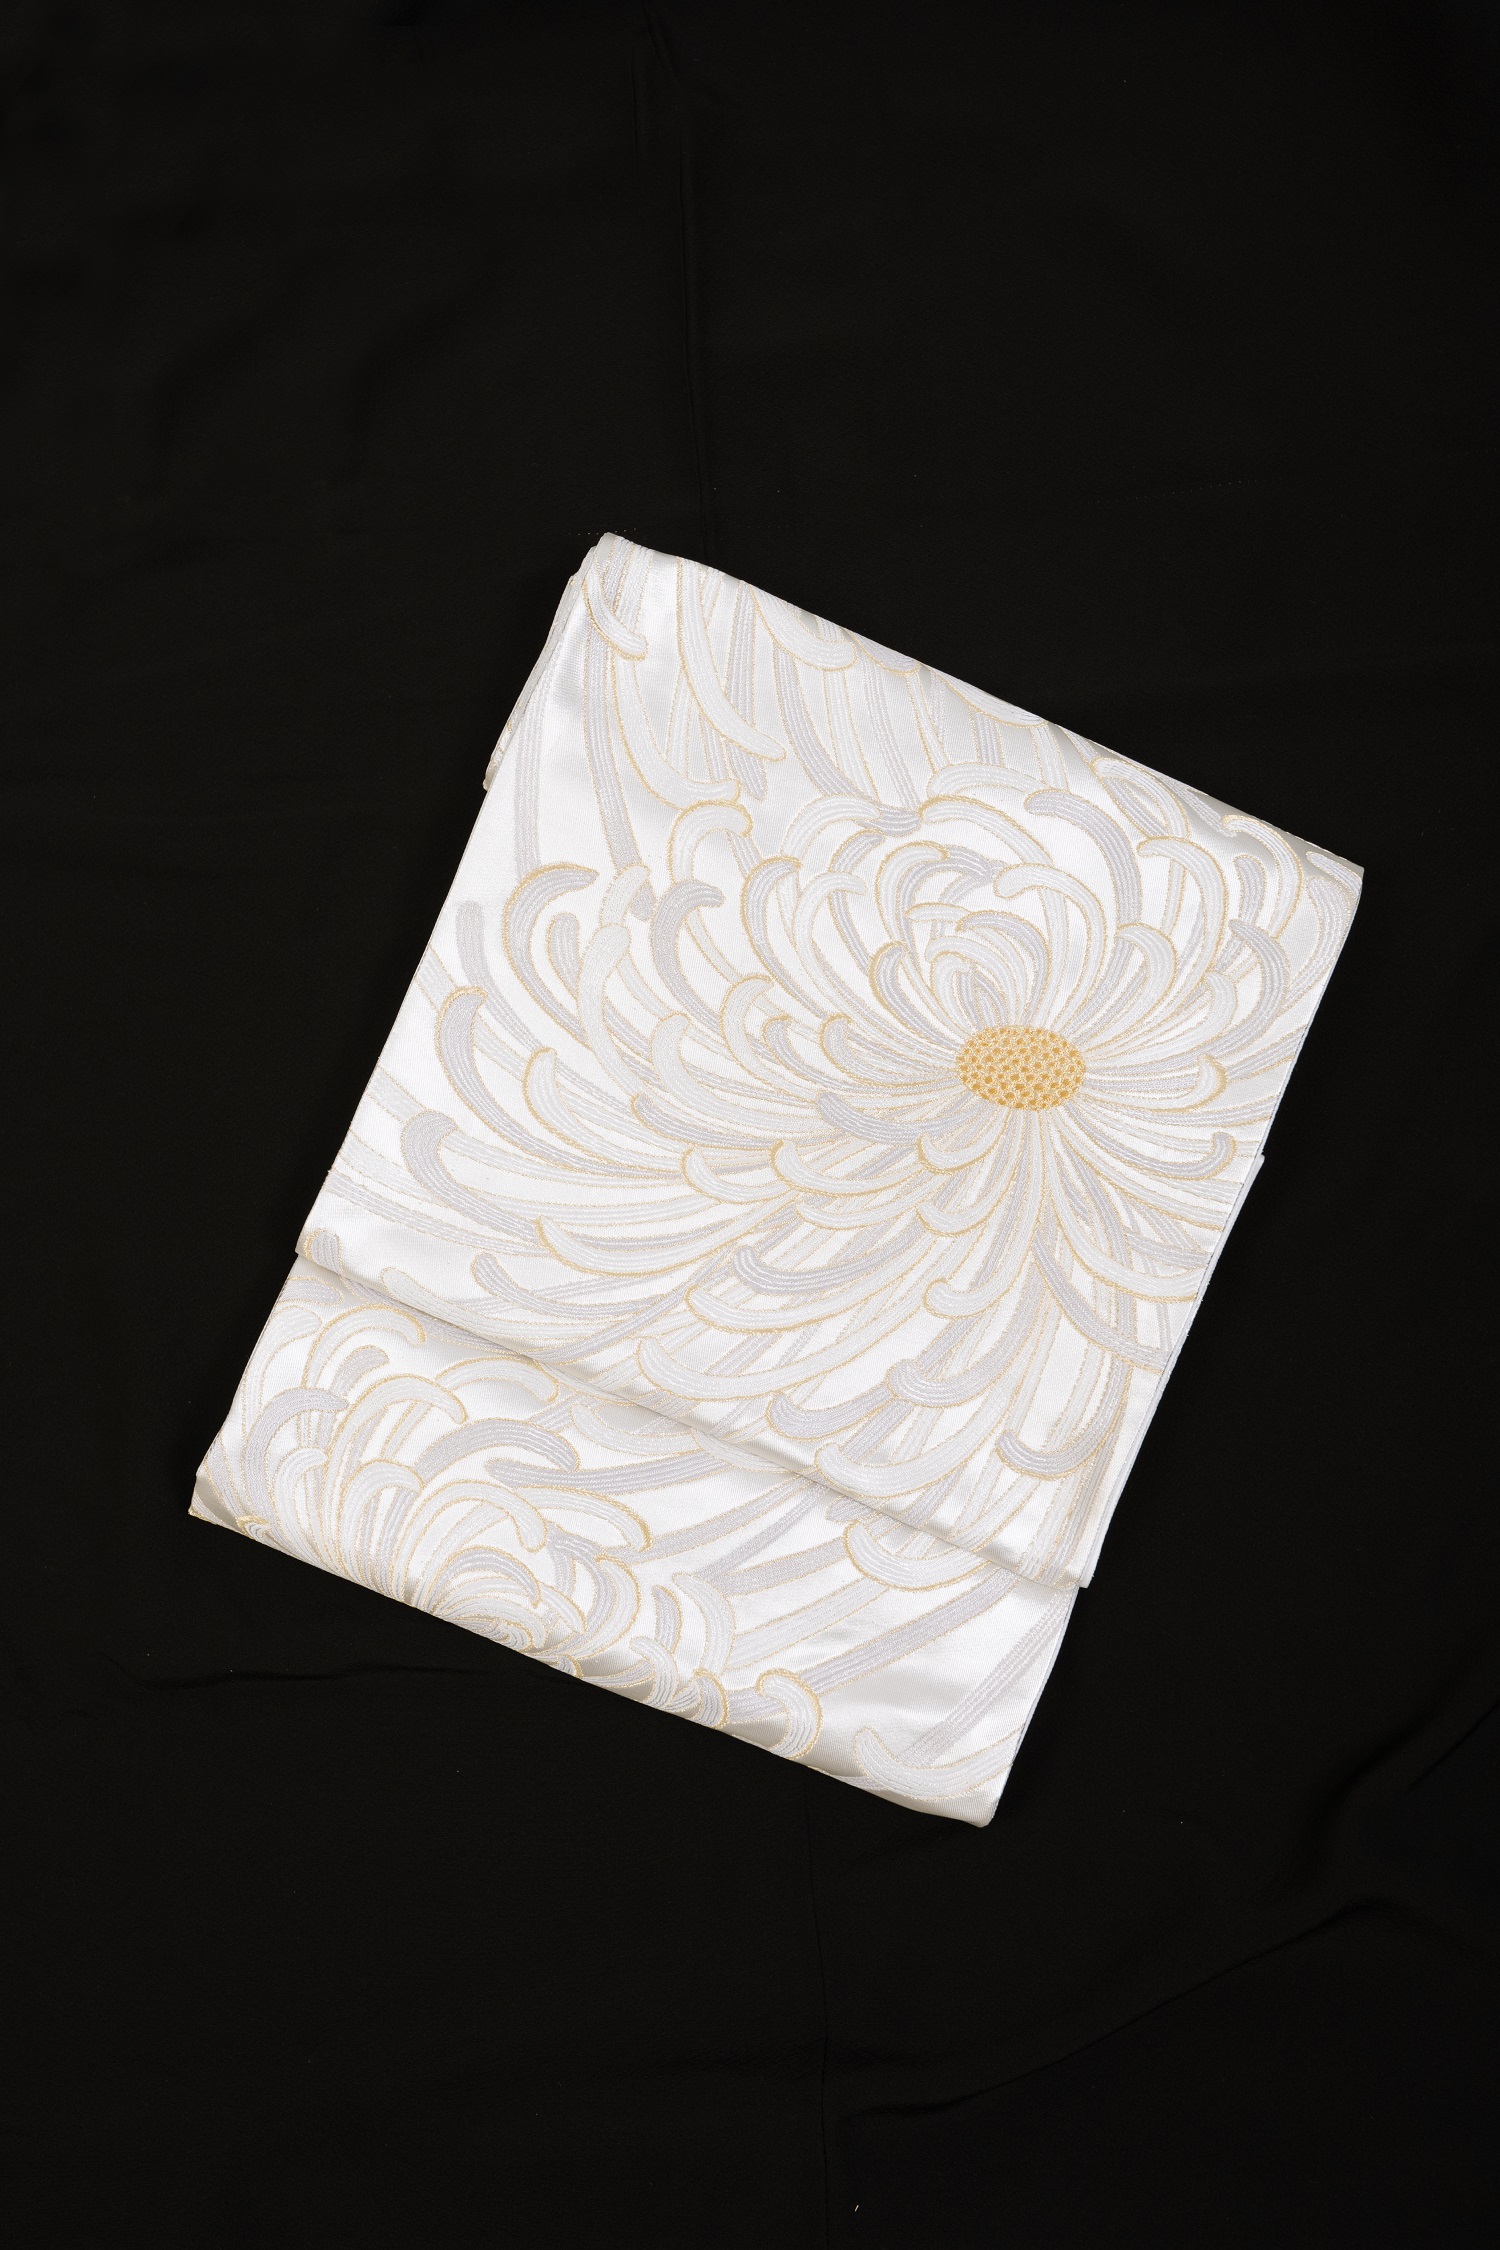 【高級帯レンタル】obi-362 高級袋帯レンタル「乱菊・河合美術織物」 